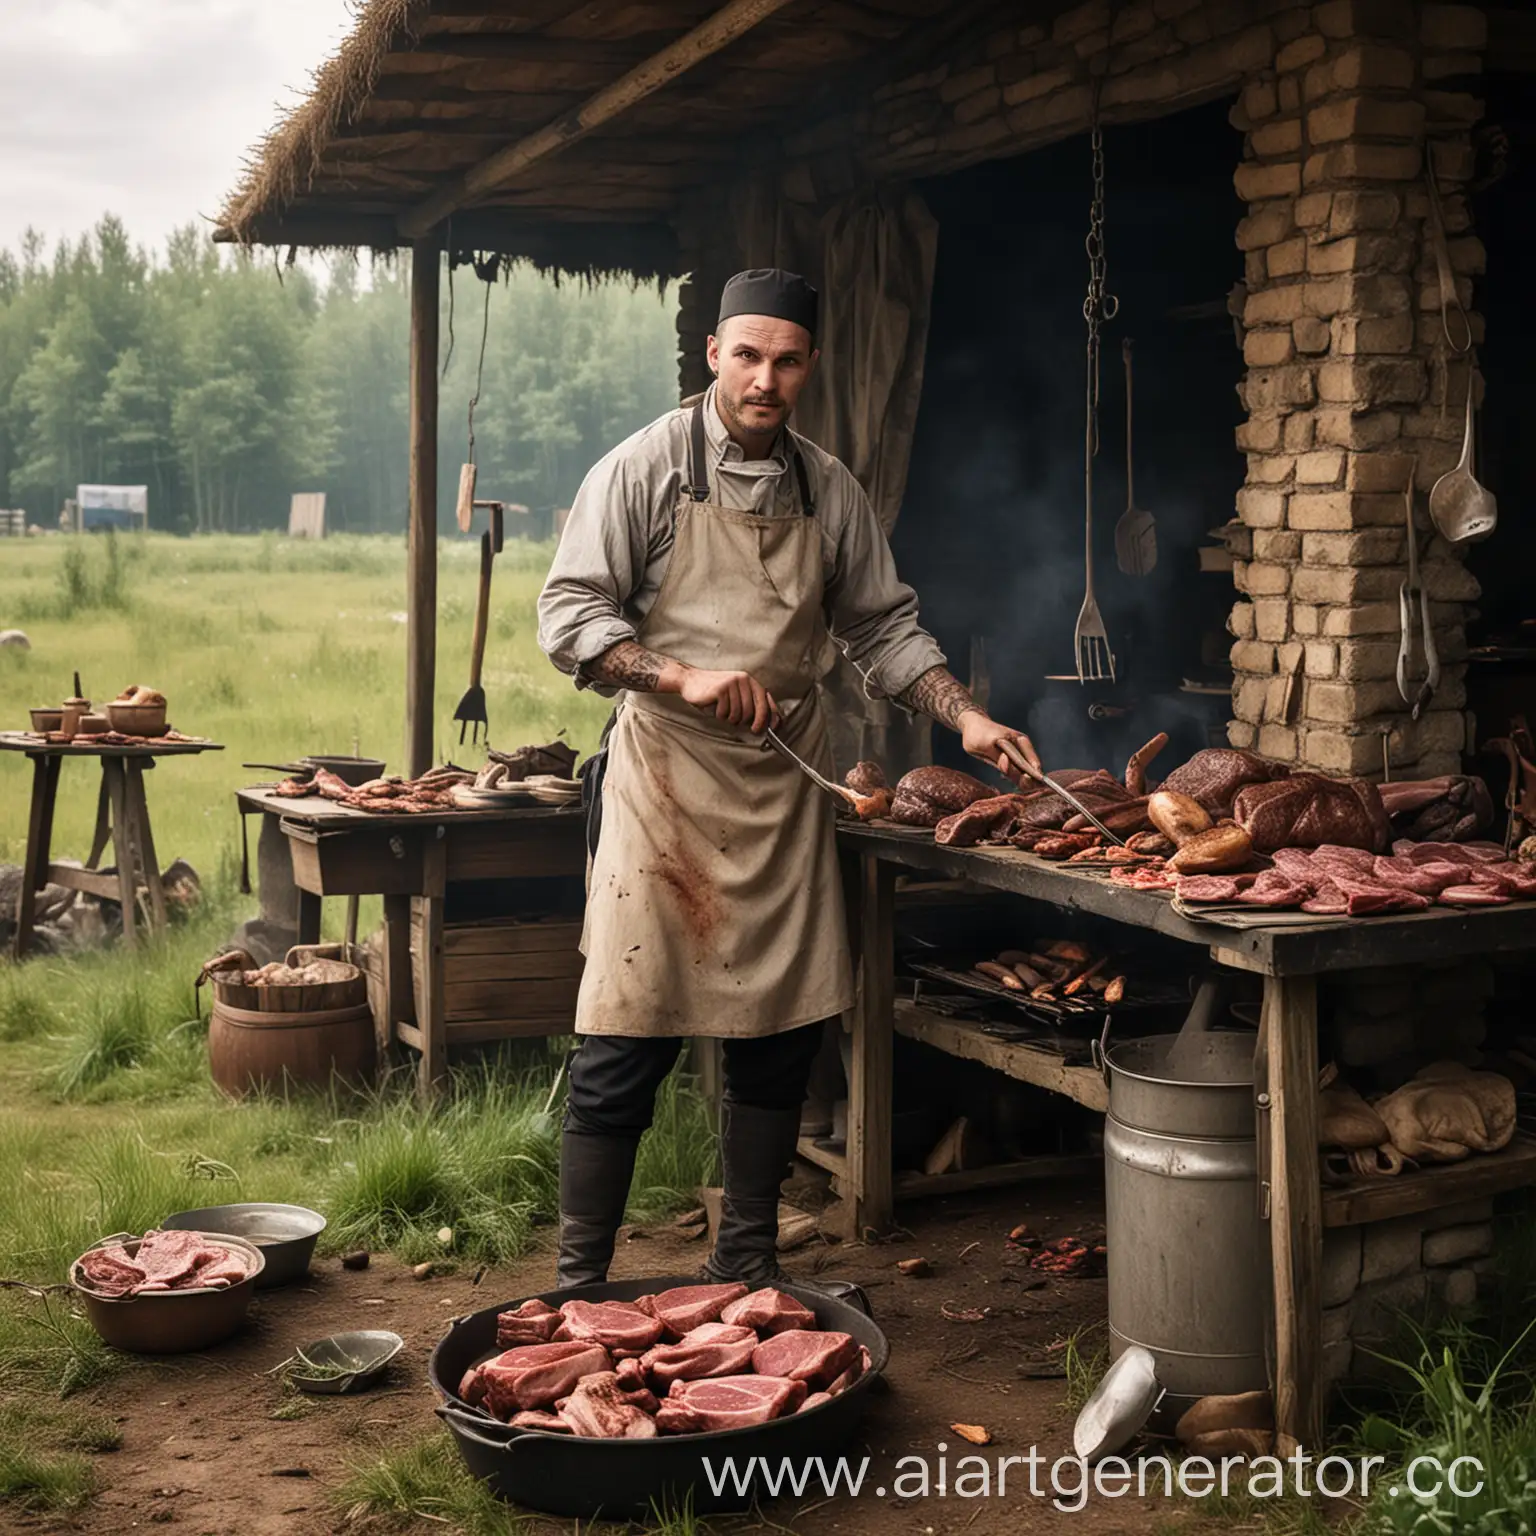 Игра Сталкер, где повар готовит на полевой кухне для персонажей игры мясо